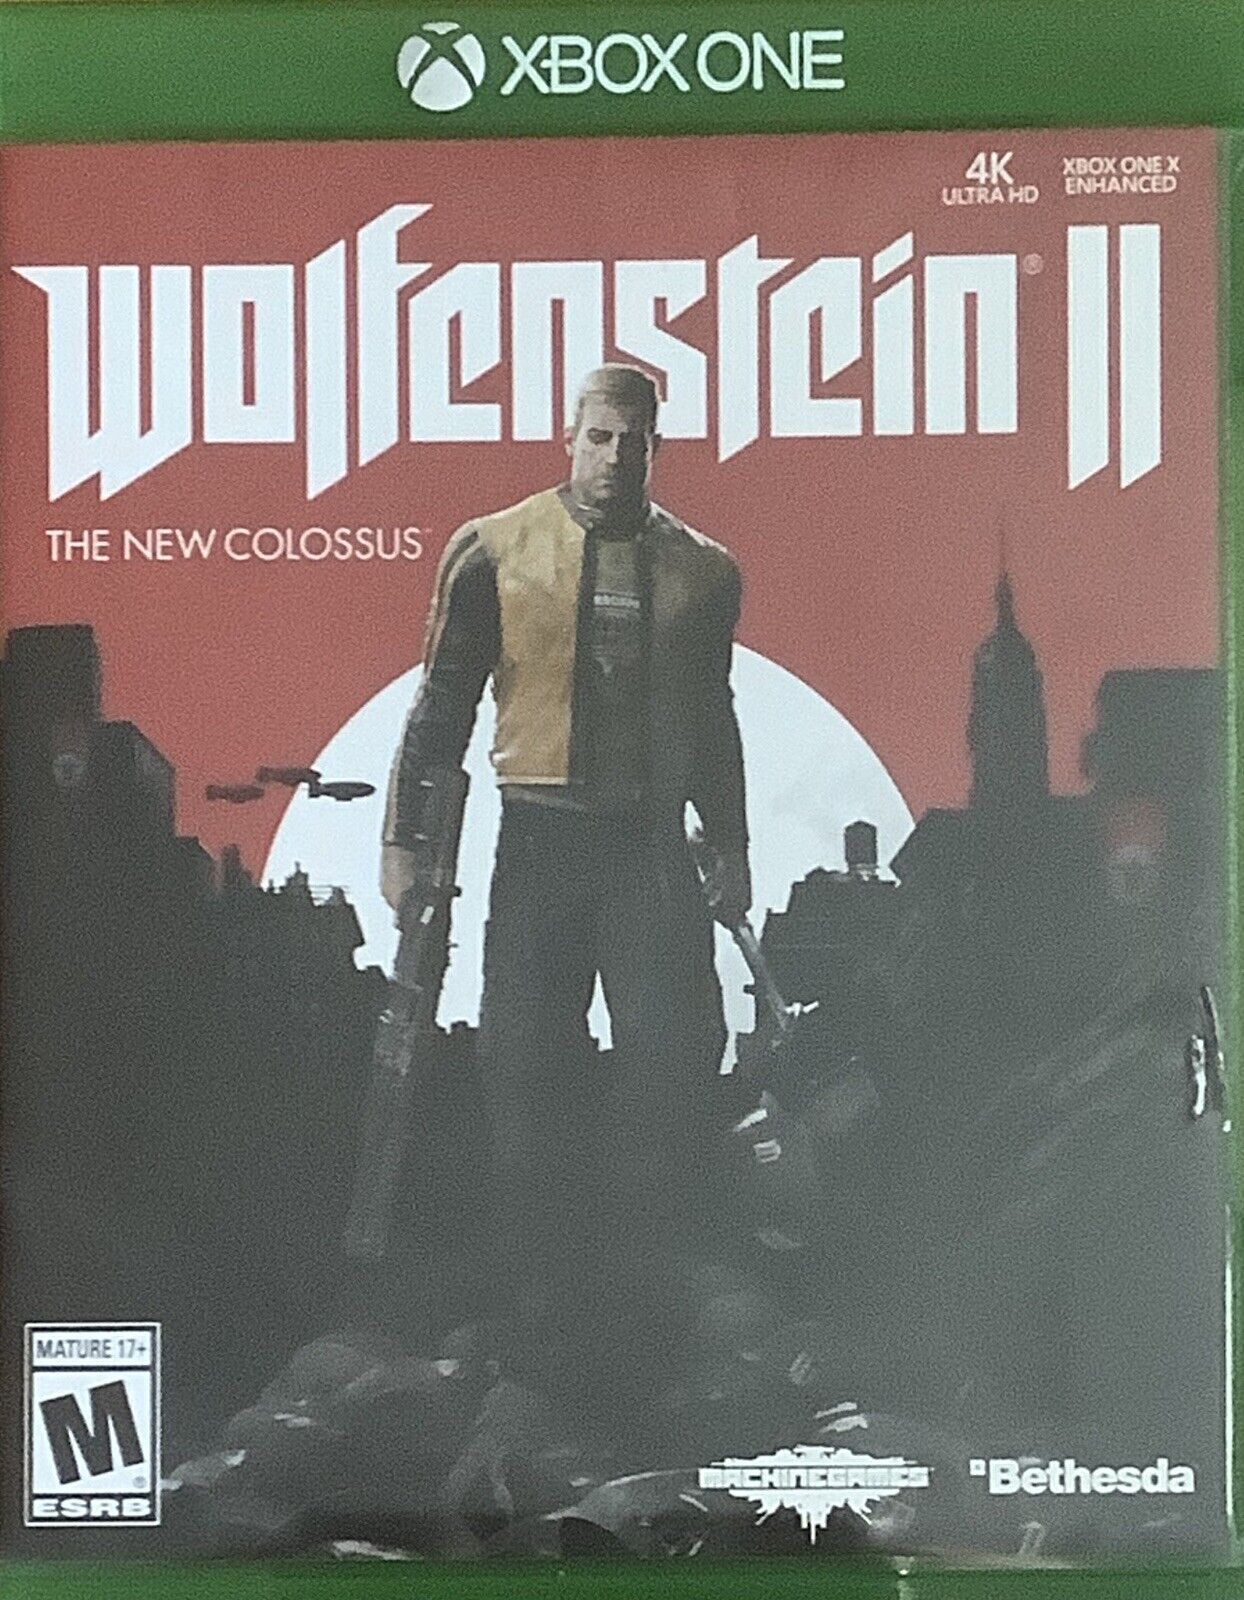 Uitscheiden Dicht overtuigen Wolfenstein II 2 The New Colossus Microsoft Xbox One Video Game + Case  93155172418 | eBay